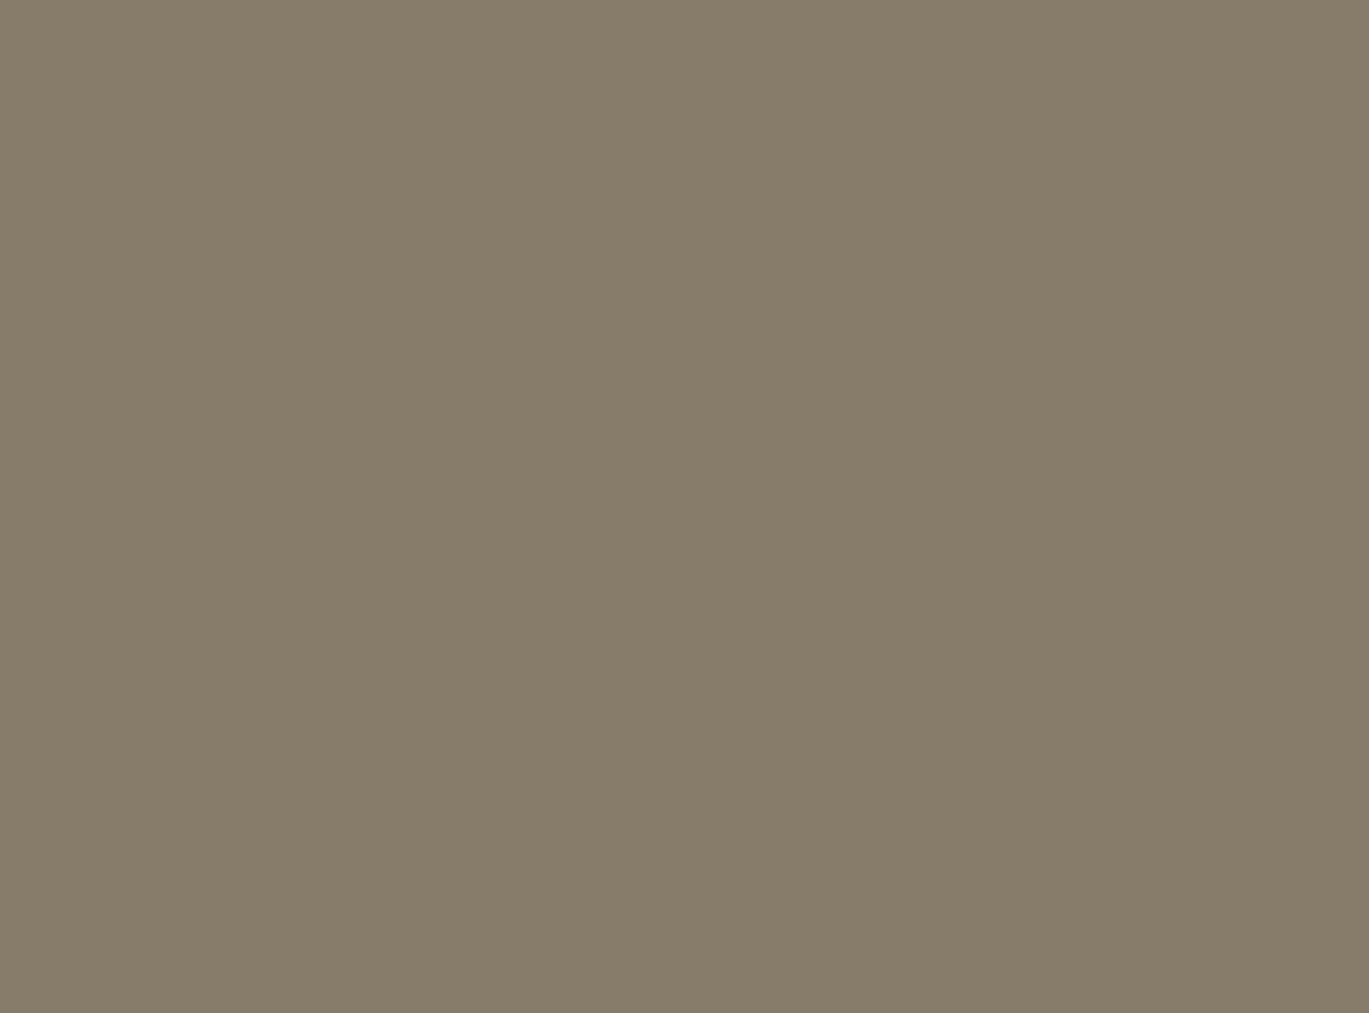 Владимир Арсеньев, Дерсу Узала и другие участники экспедиции по Уссурийской тайге. Фотография: librebook.me